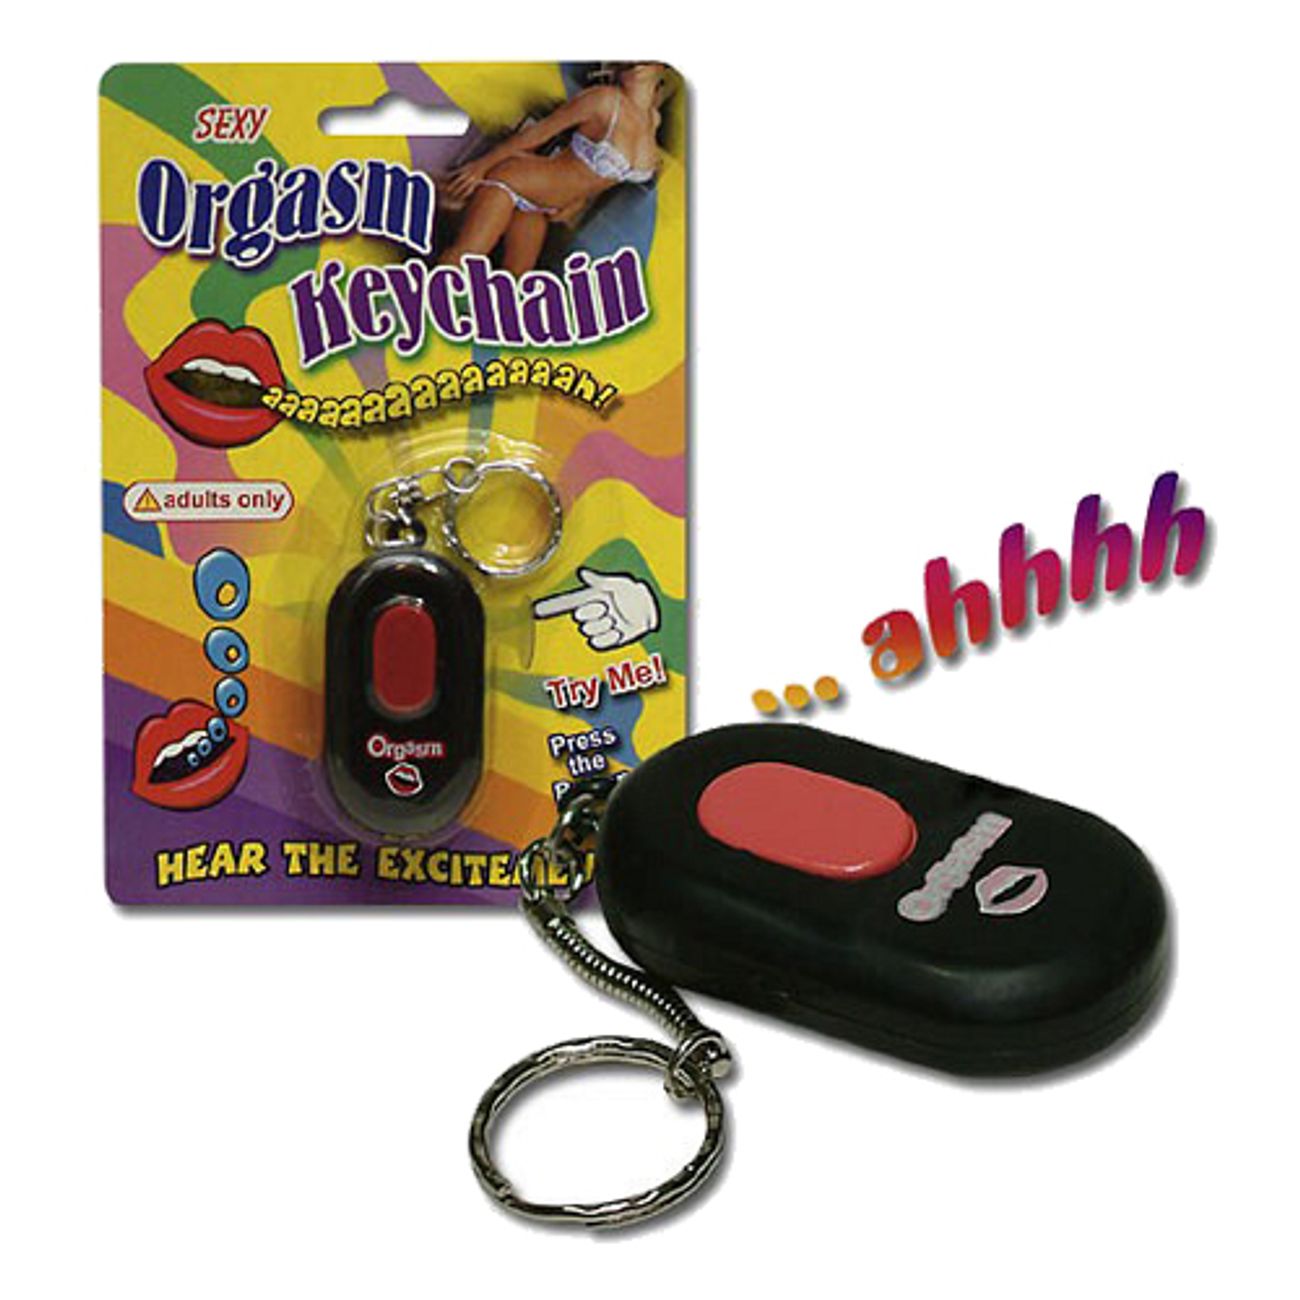 orgasm-nyckelring-1